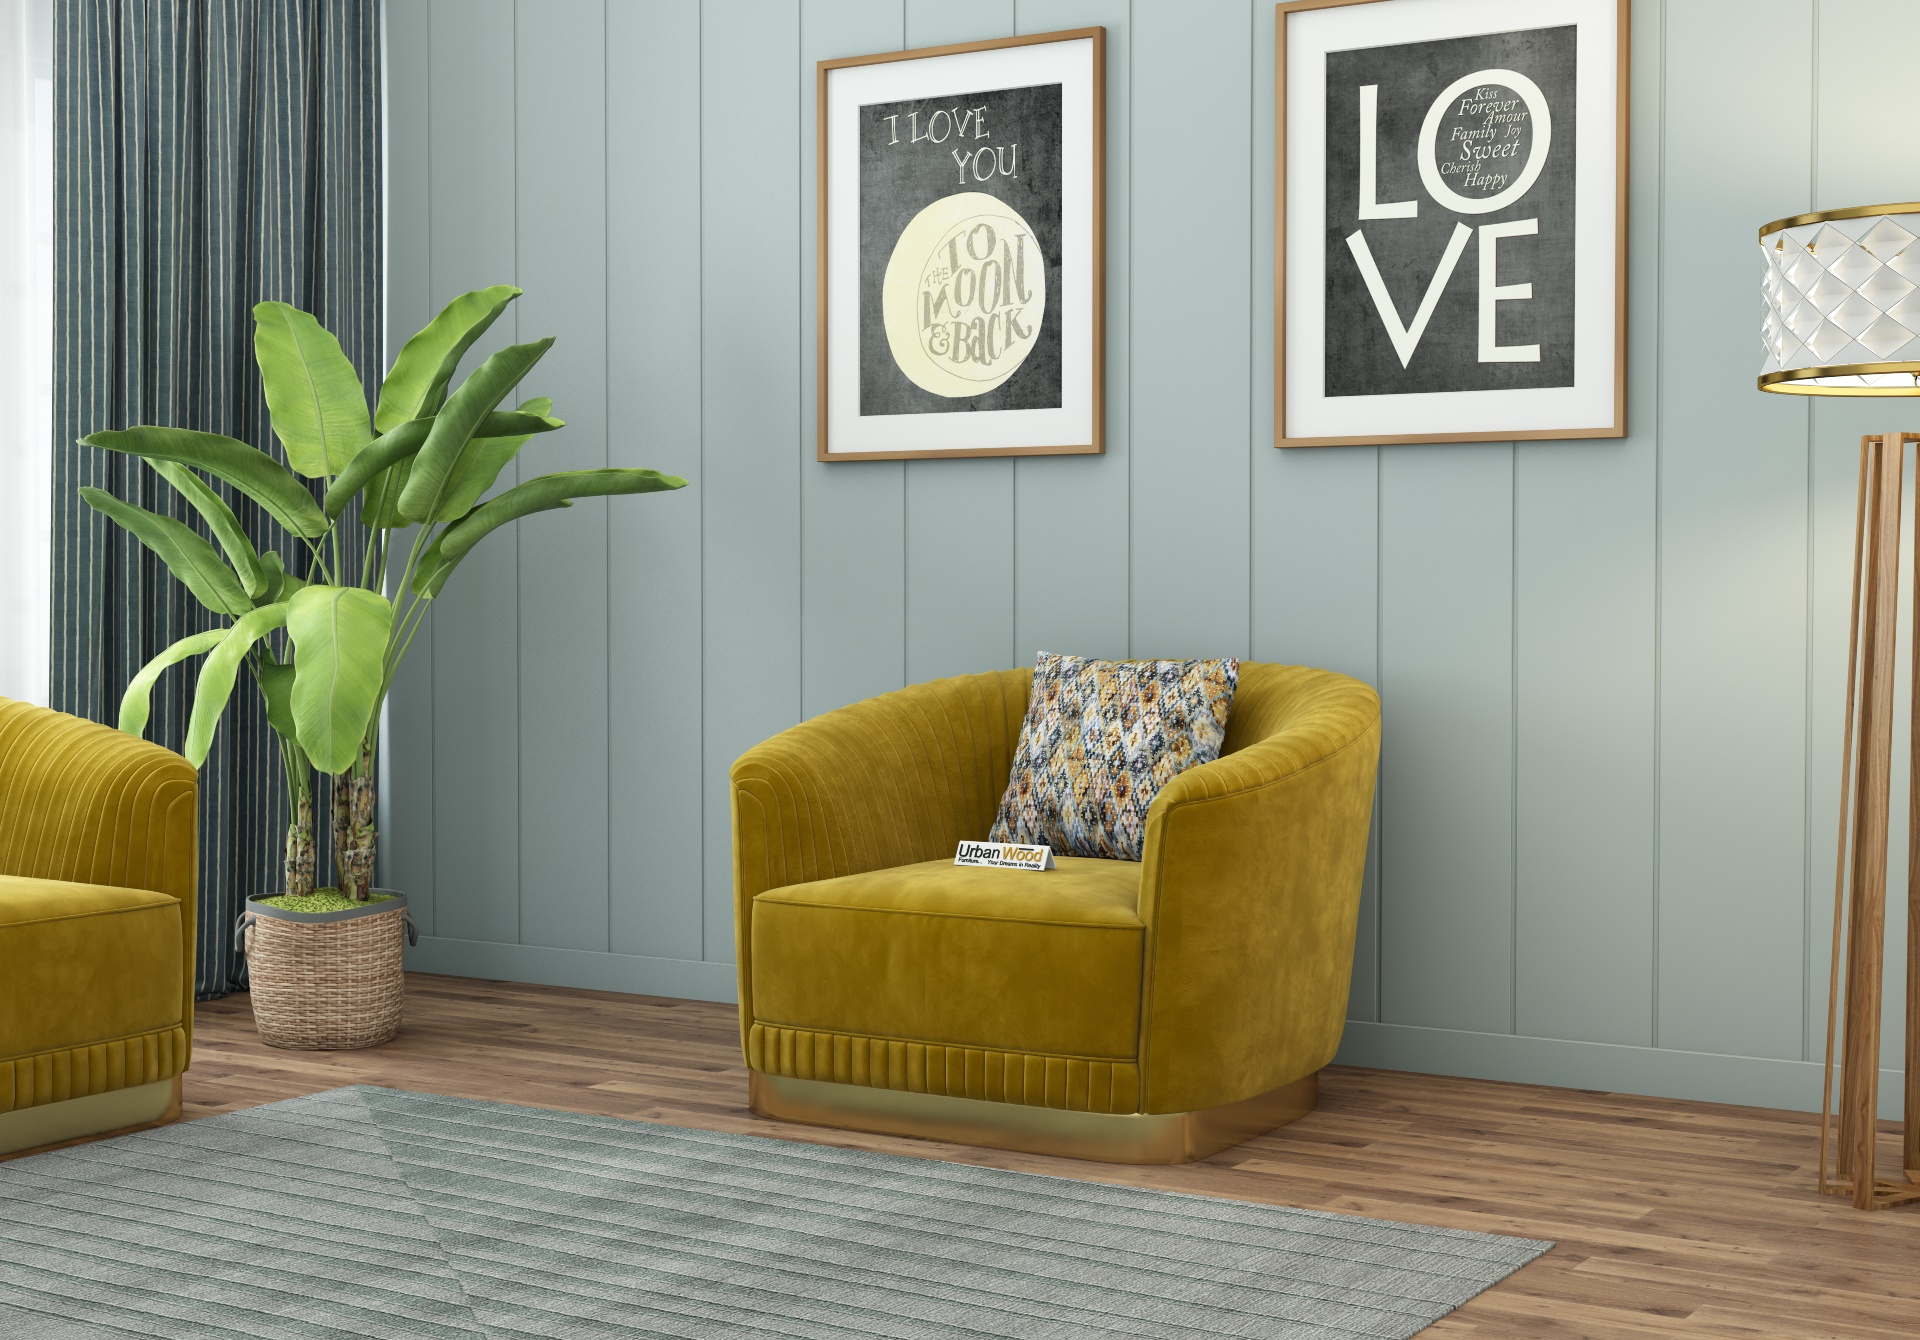 Roy 1 Seater Fabric Sofa (Velvet, Amber Gold)